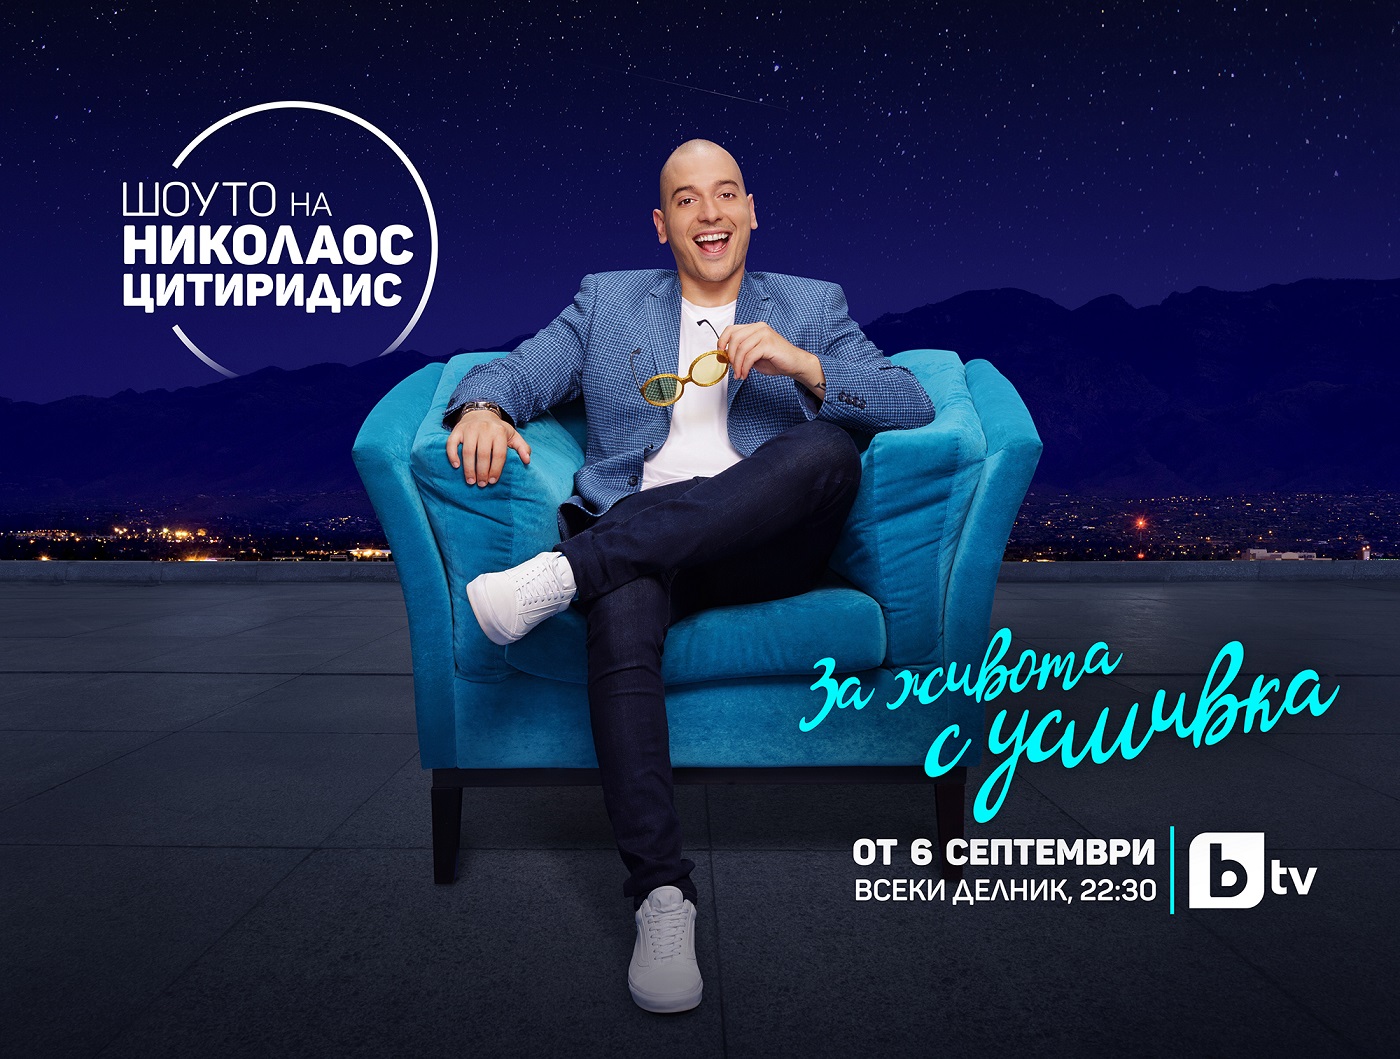 Новият сезон на “Шоуто на Николаос Цитиридис” стартира на 6 септември по bTV